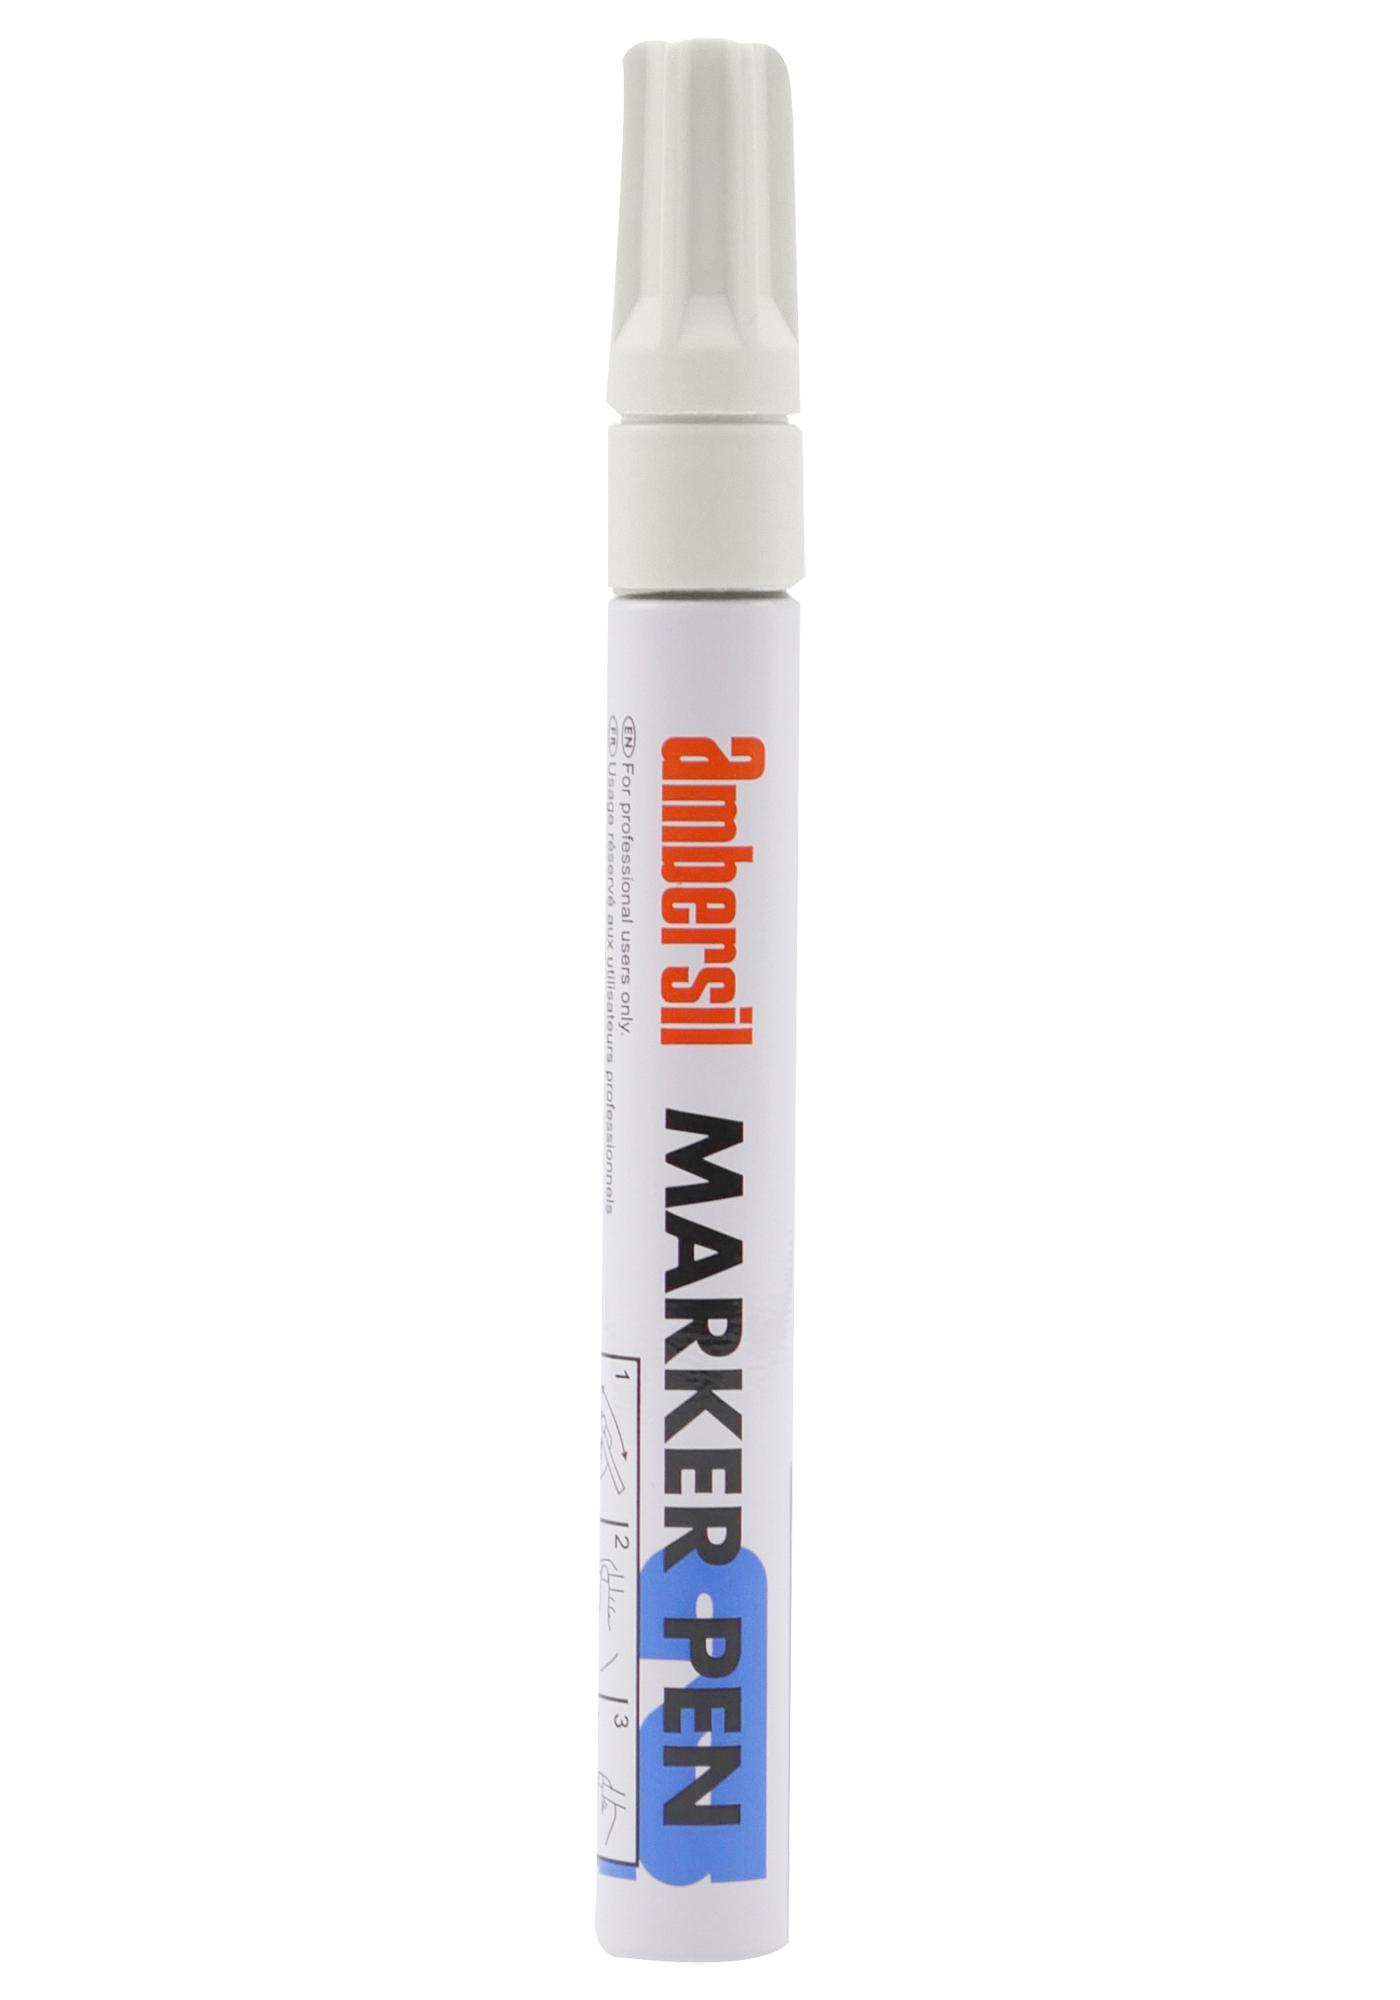 Ambersil Marker Pen White, 3mm Coating, Paint, Pen, White, 0.0215G